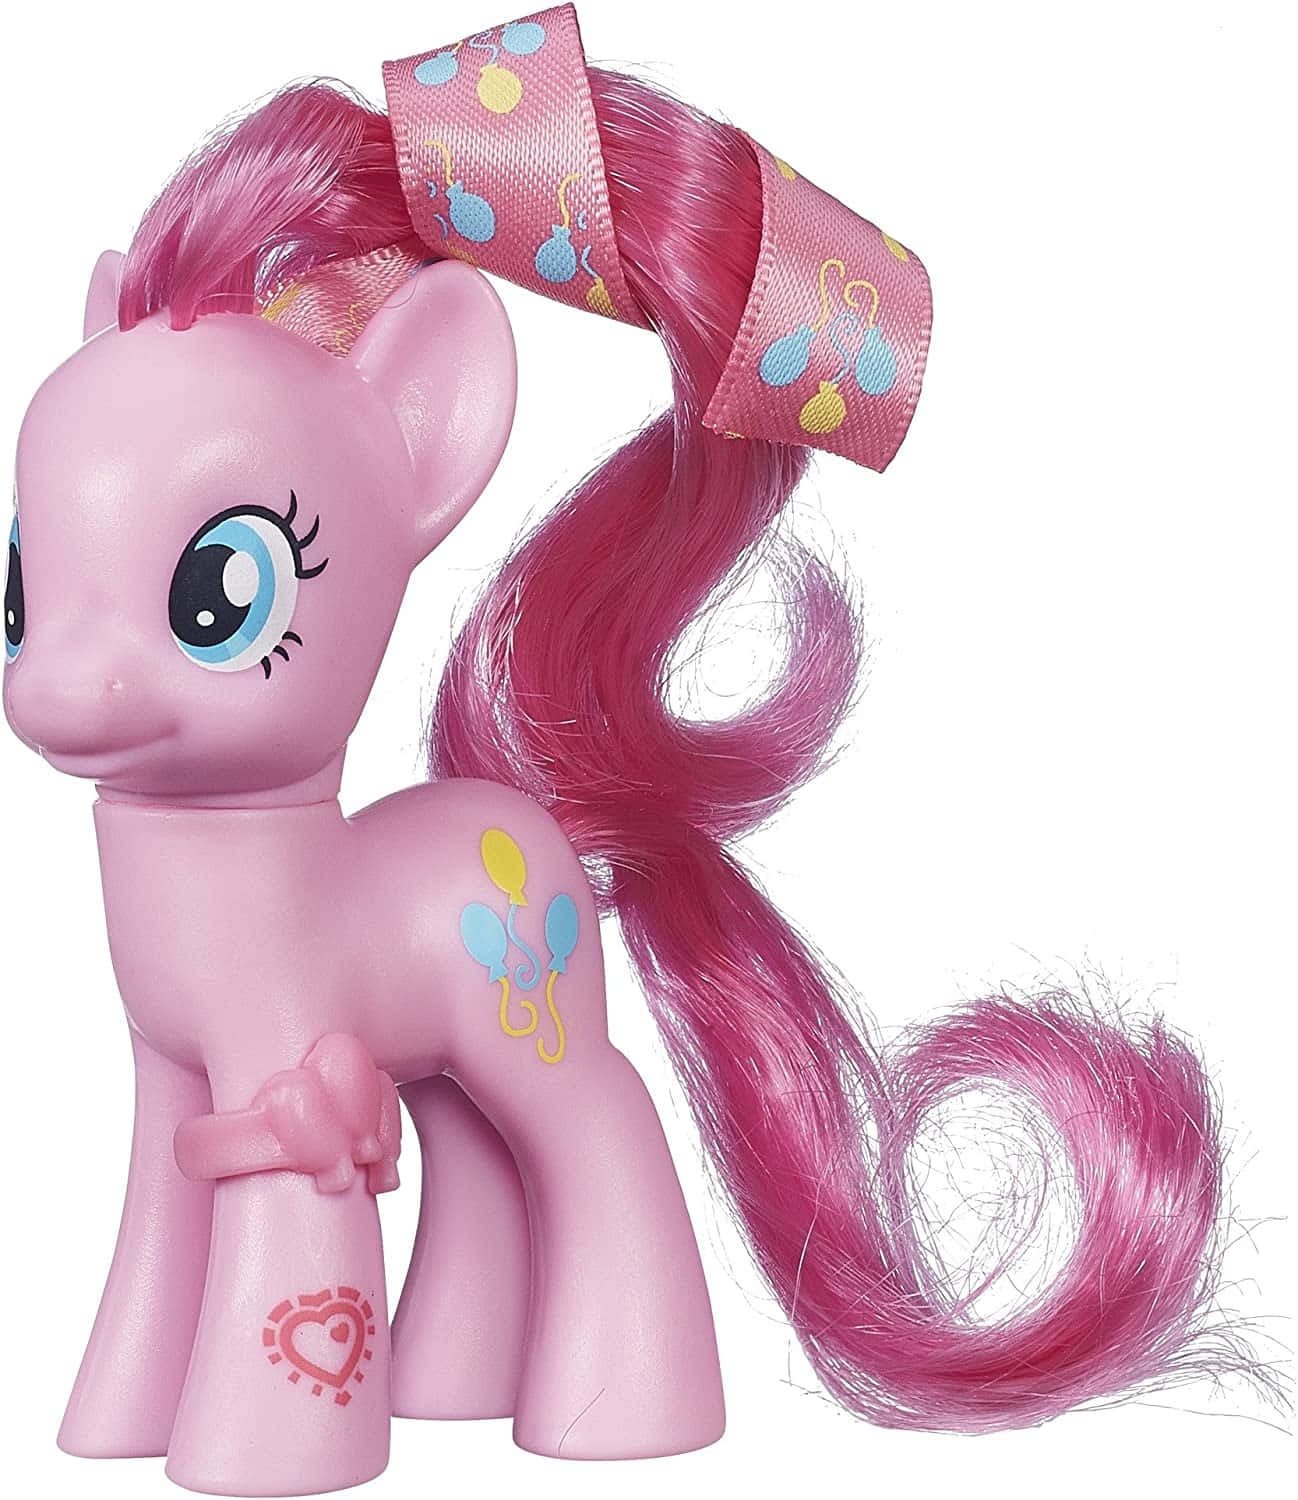 Meinkleines Pony Pinkie Pie Figurenbild.